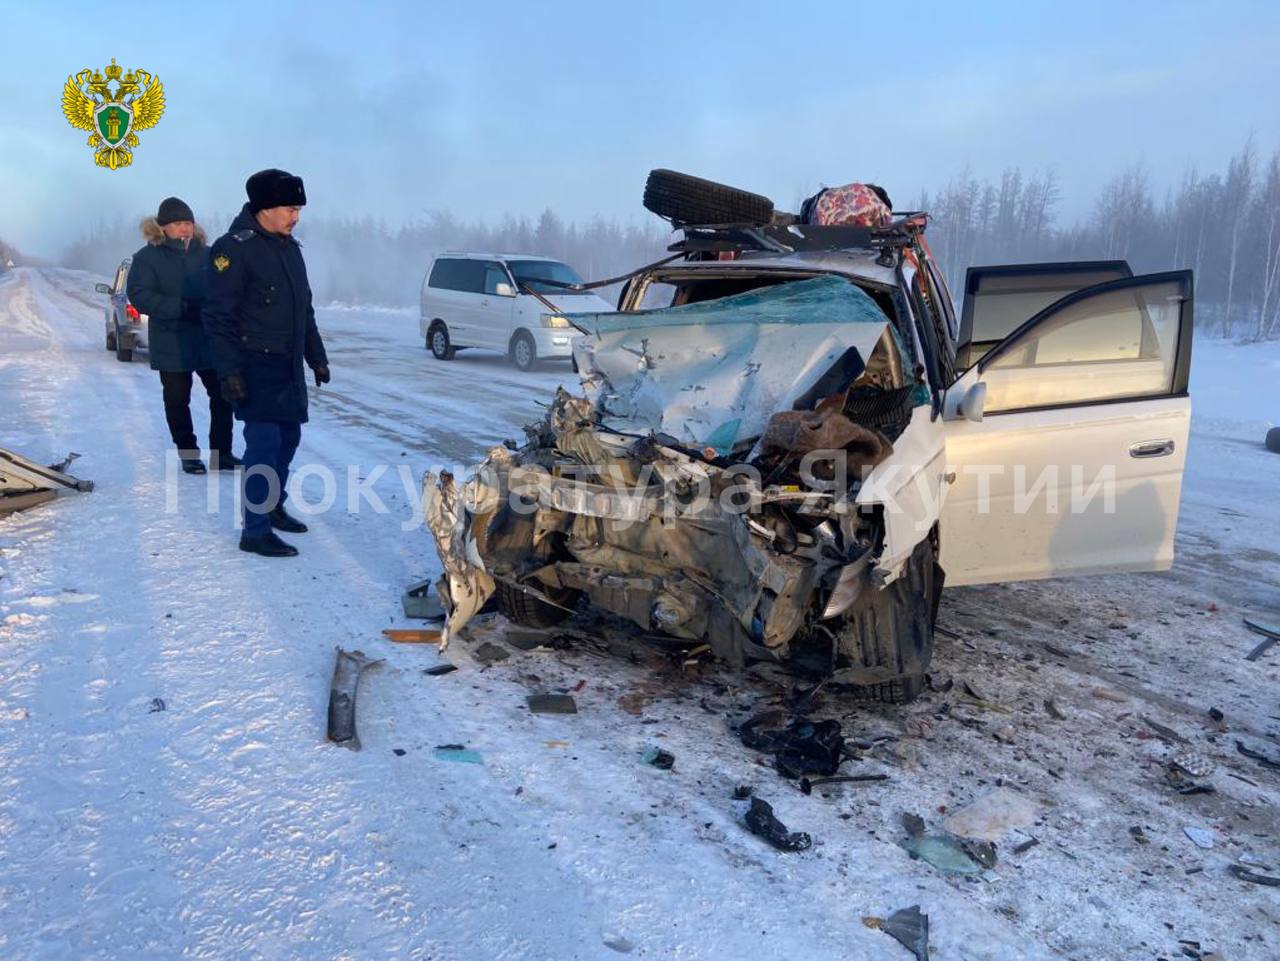 Пять человек, в том числе трое детей, пострадали в ДТП в Якутии